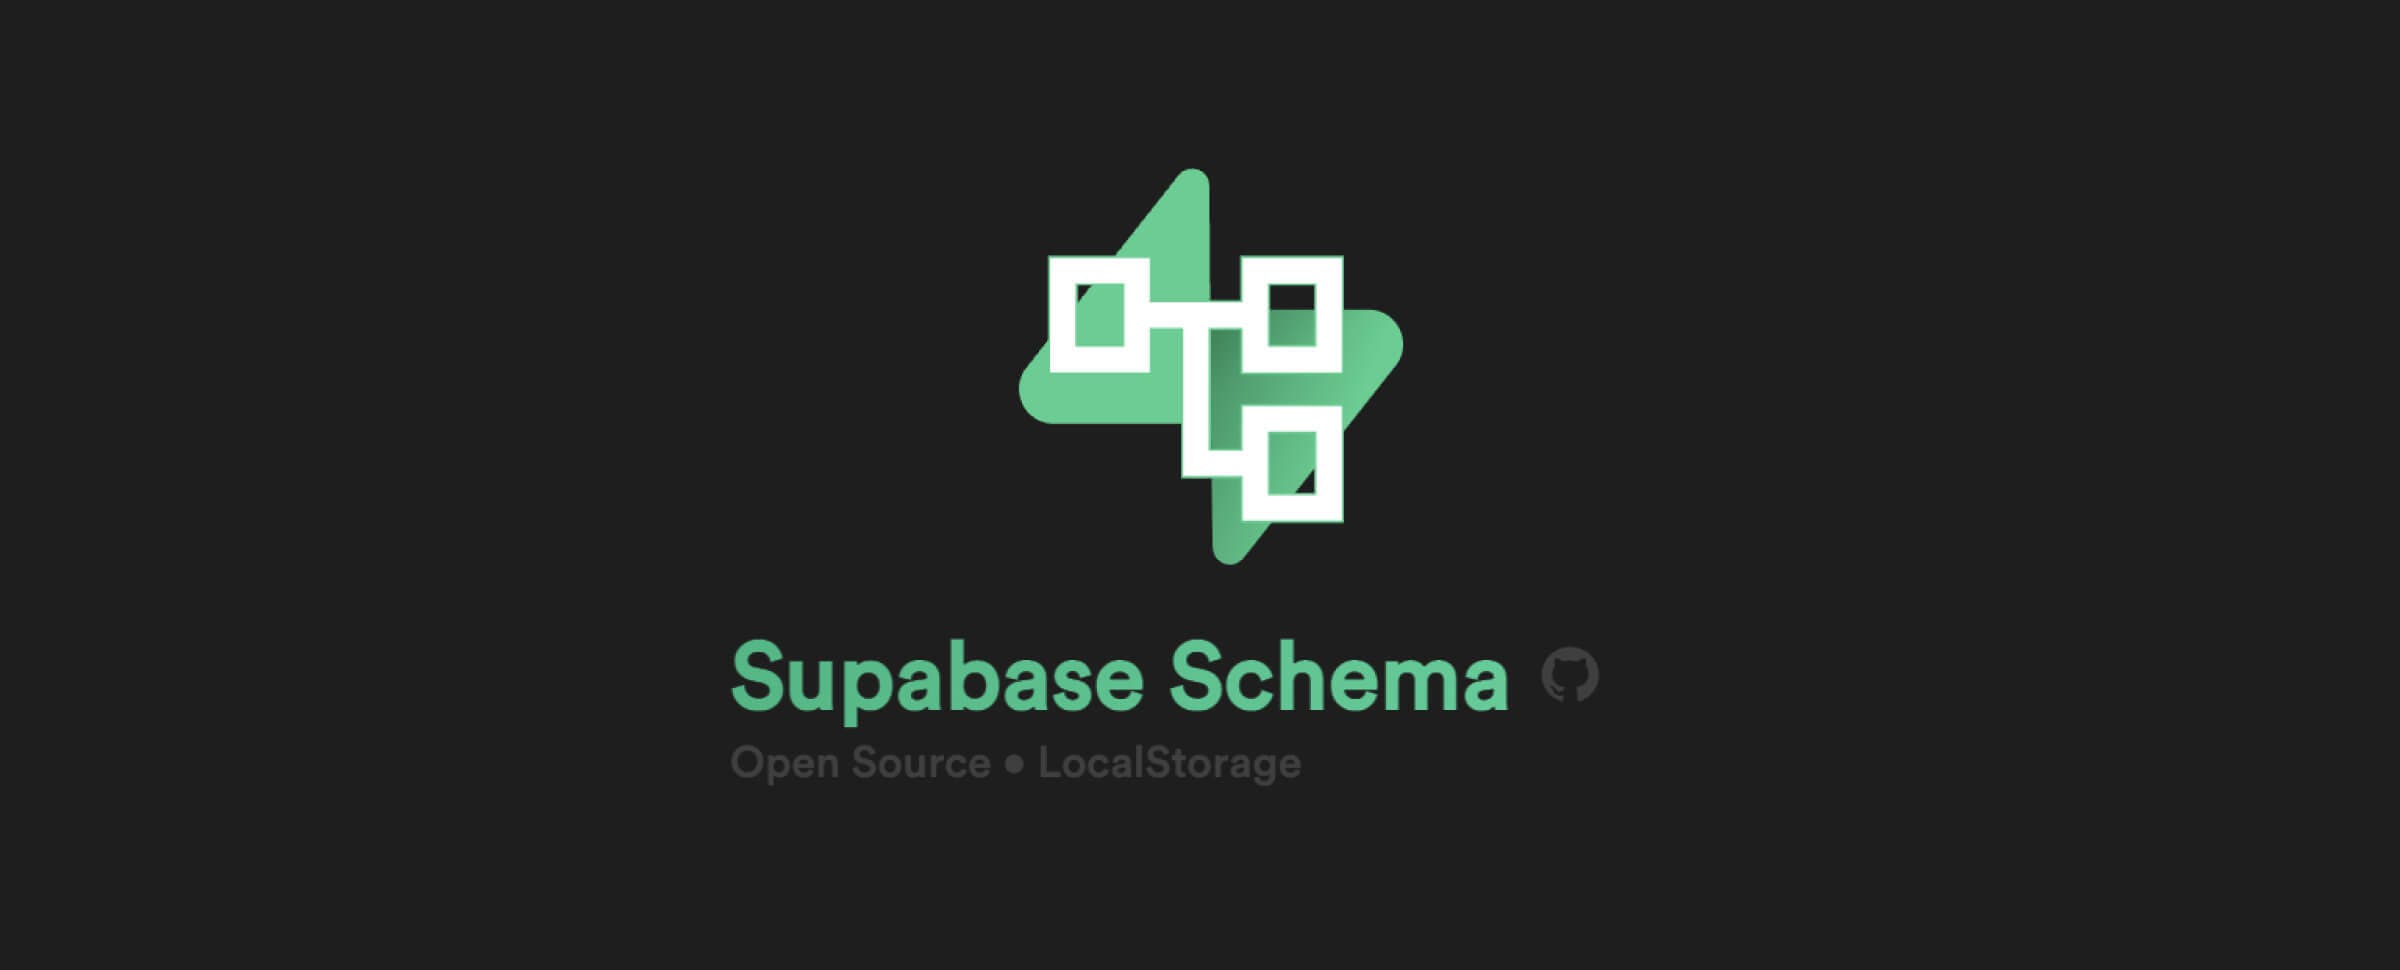 Made with Supabase - Supabase Schema